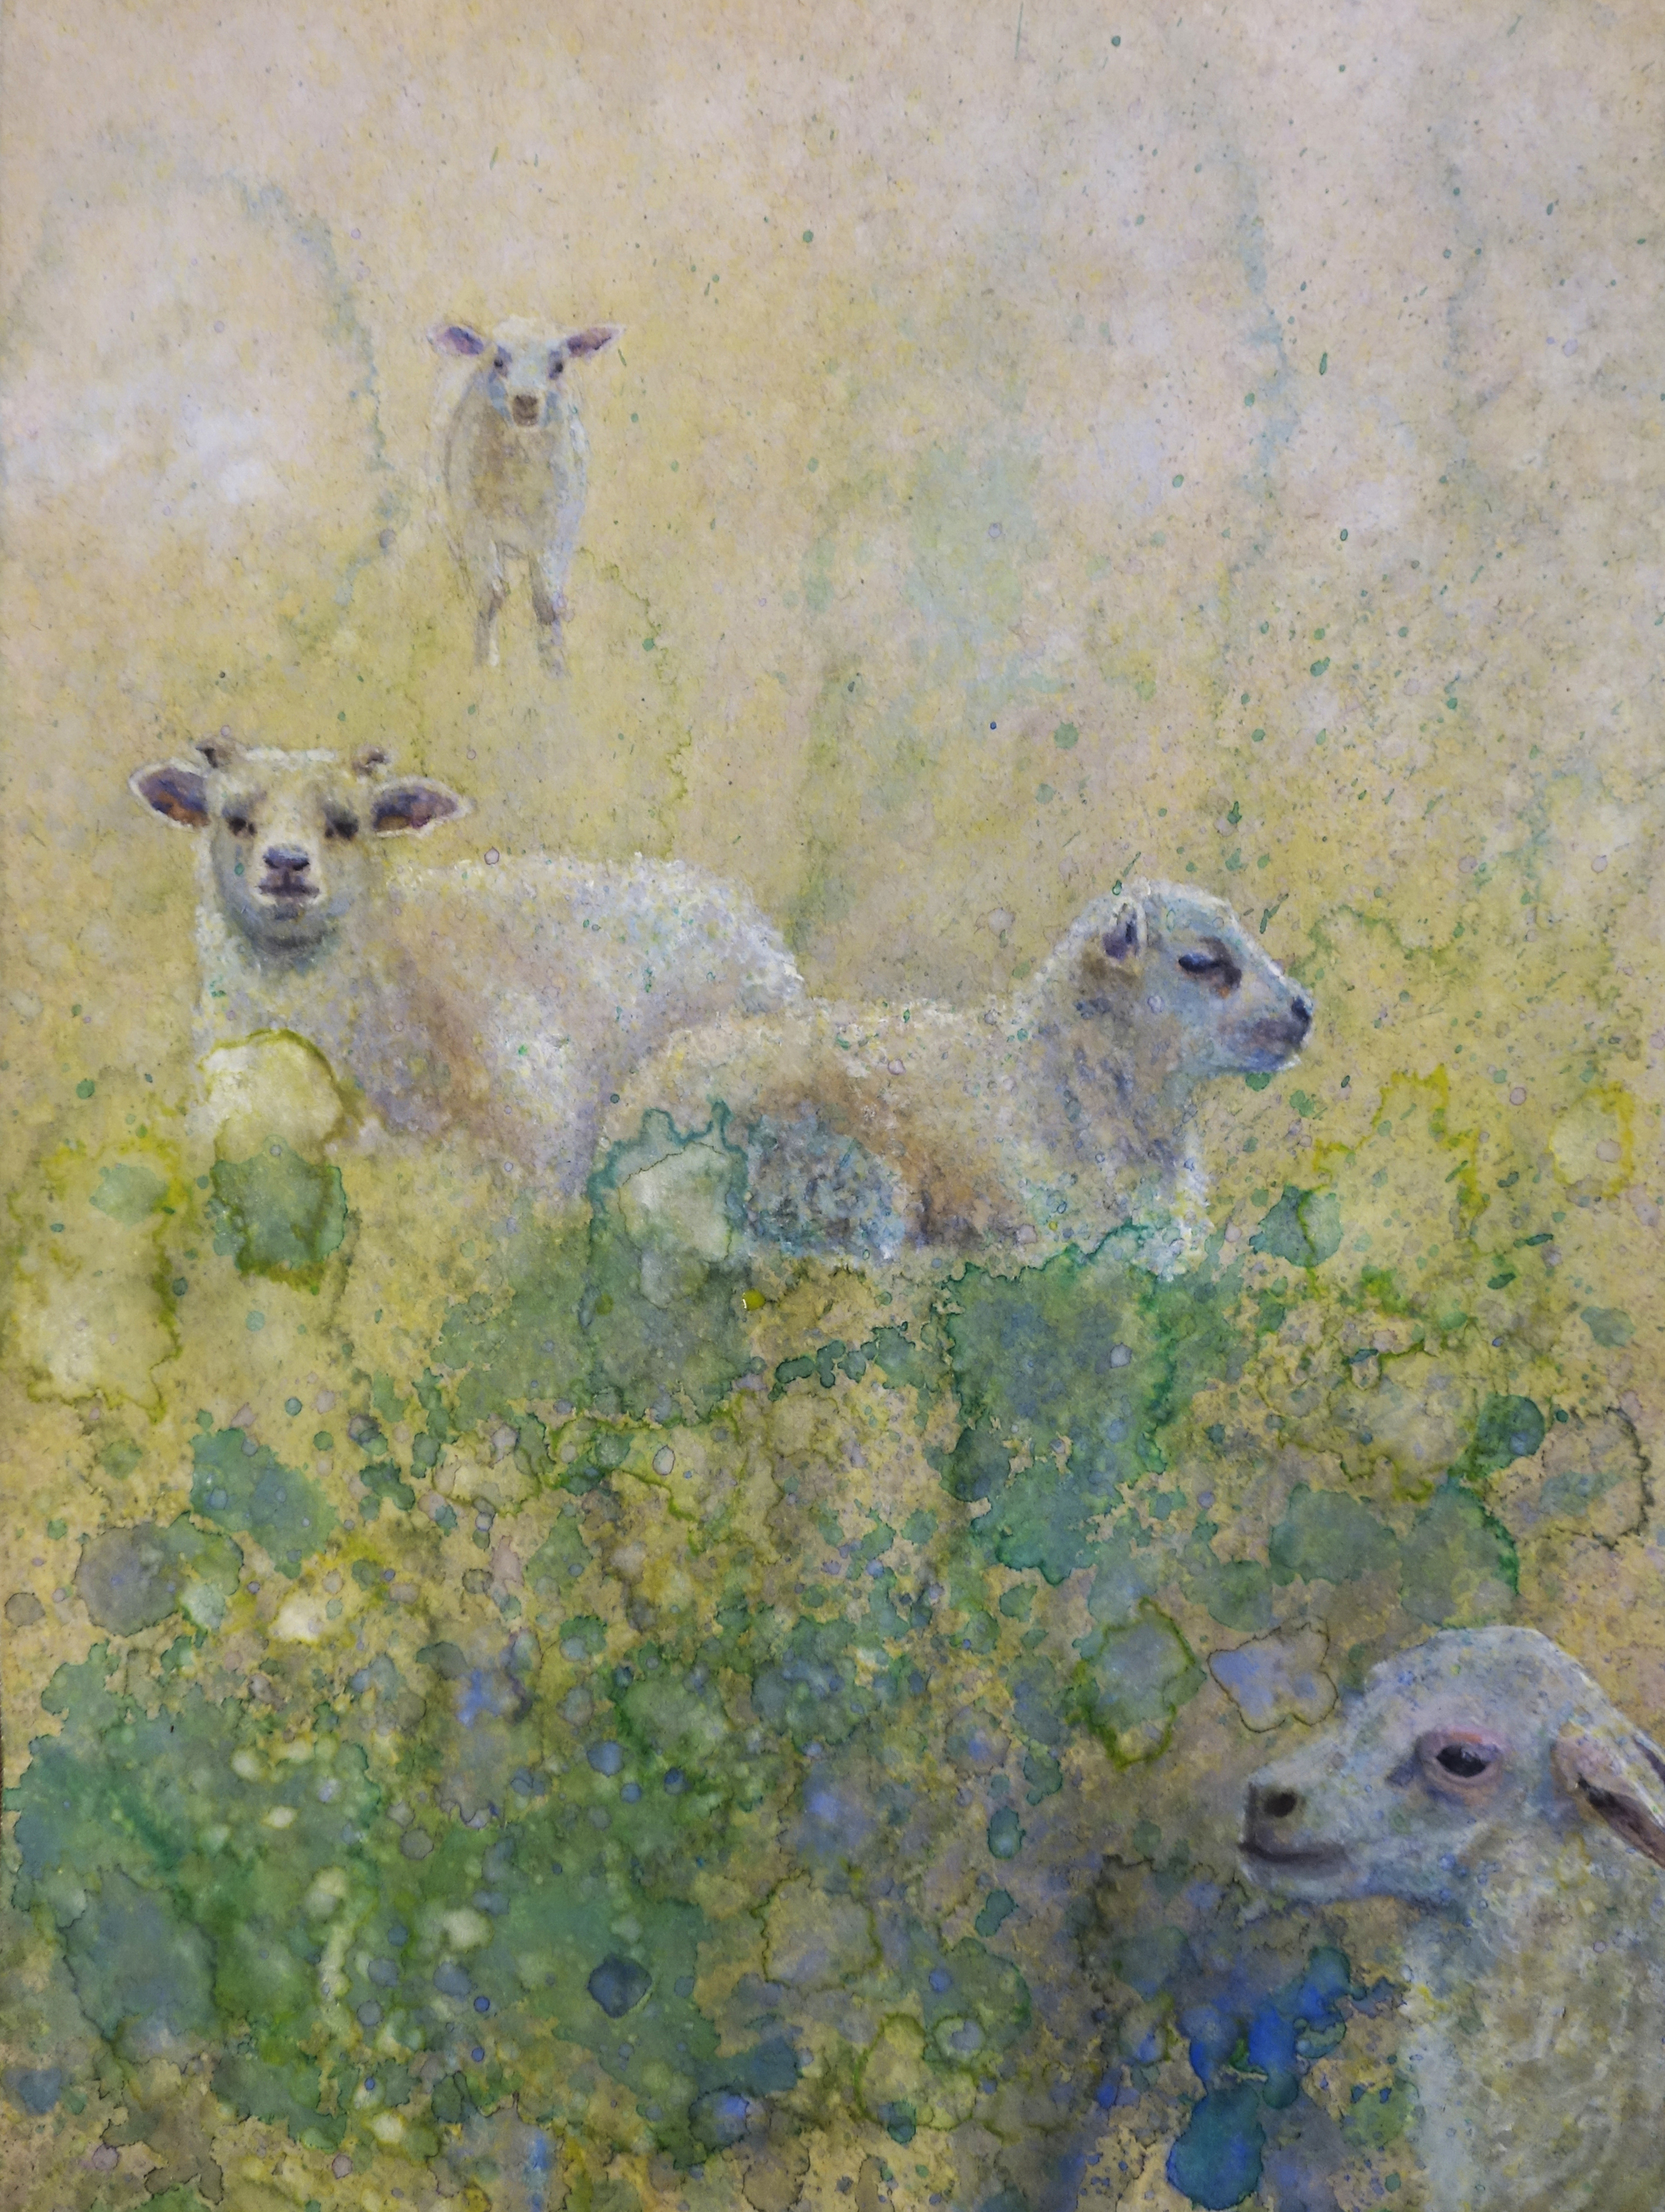 Lambs in Field